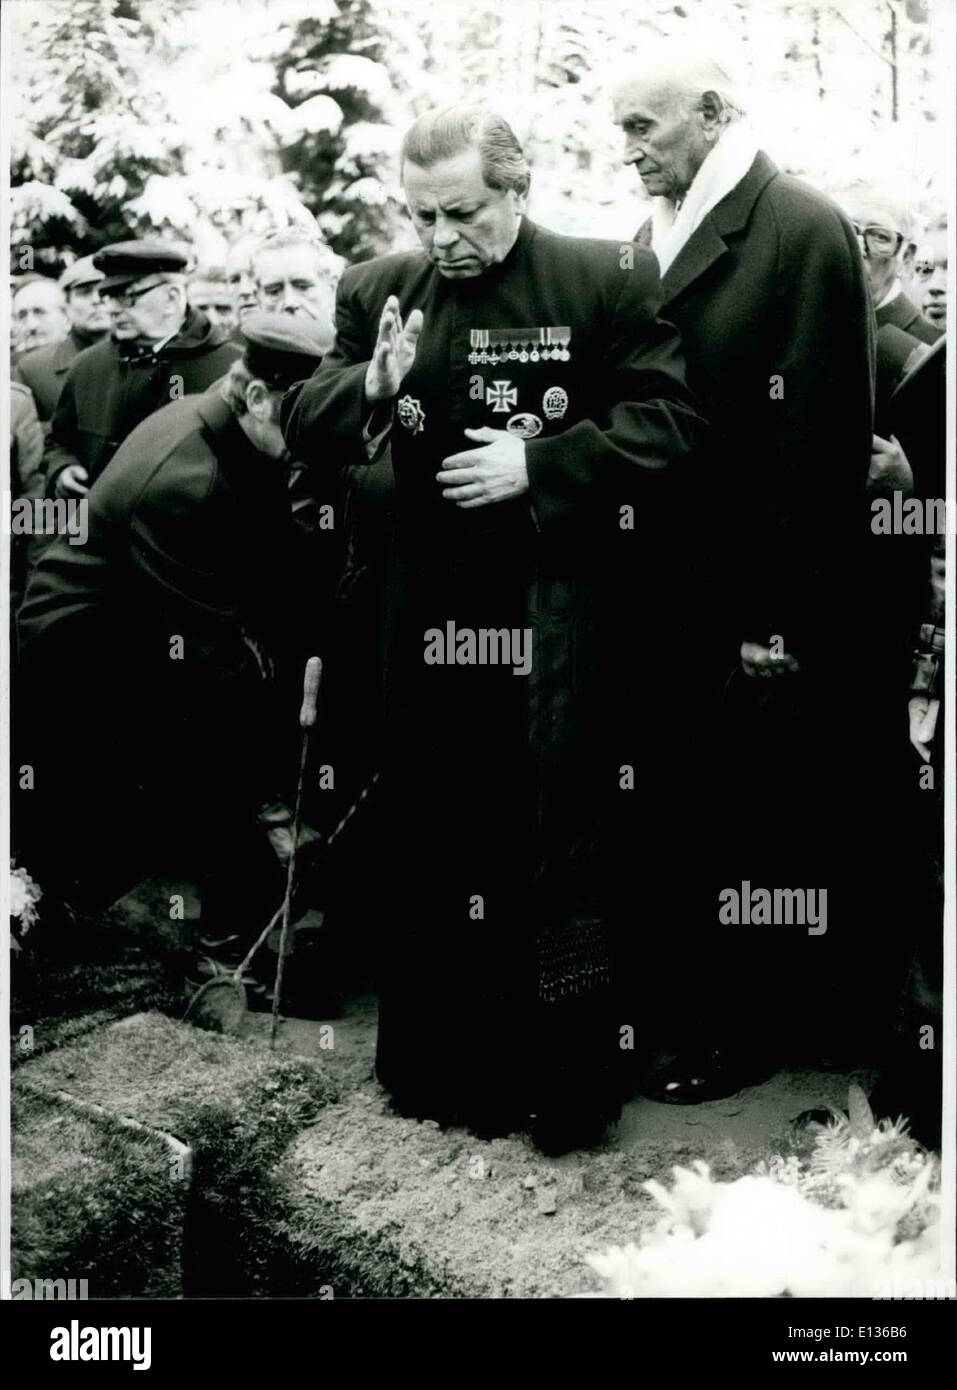 28 févr. 2012 - L'ex-amiral de la flotte Karl donitz mis au repos dans aumuhle près de Hambourg/Allemagne de l'Ouest : environ 5000 personnes ont payé le dernier honneur de l'ancien amiral de la flotte Karl Donitz, quand il a été mis au repos le 6 janvier 1981 t sur le cimetière de aumuhle près de Hambourg. Plusieurs officiers décorés (en matière civile) de la deuxième Deuxième Guerre mondiale avait été sous l'enterrement-invité - sous-marin aussi les anciens conducteurs de l'Allemagne de l'ouest, de l'Autriche et des représentants d'associations de soldats de Grande-Bretagne, France et Italie prévue de guirlandes Banque D'Images